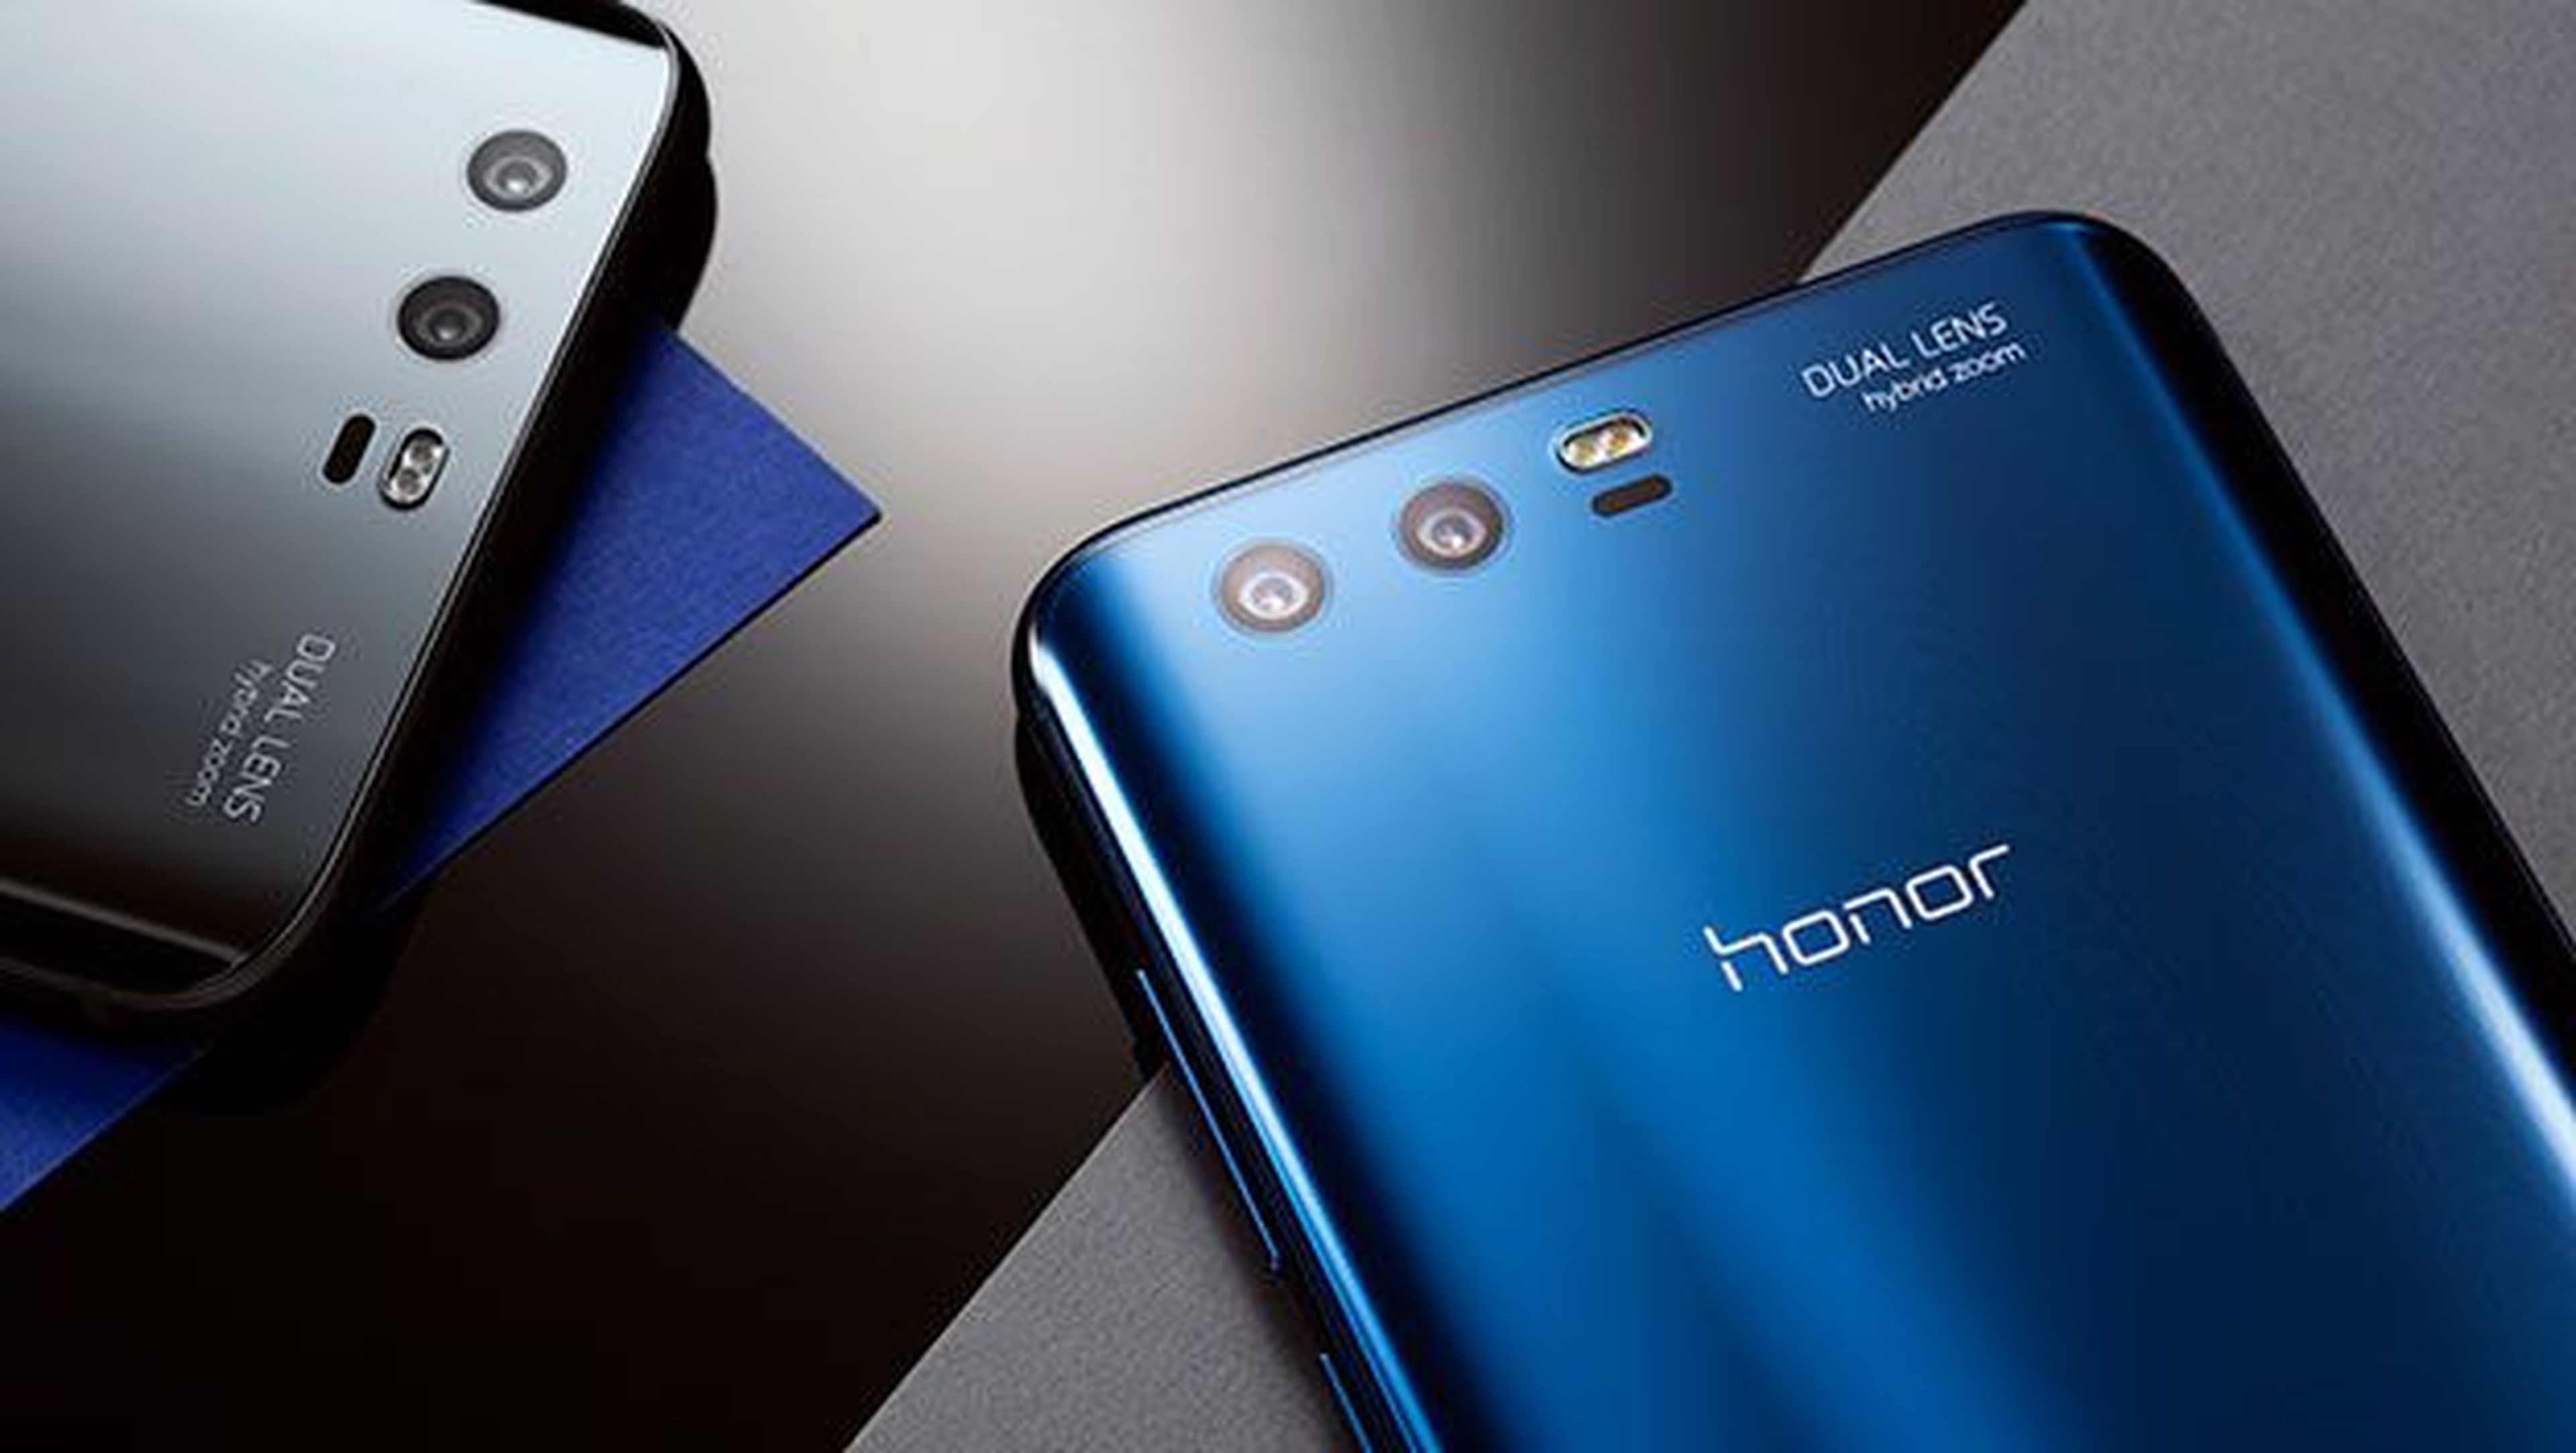 Honor 9 google. Huawei Honor 9. Huawei Honor 8x 2018. Honor 9 Dual Lens.